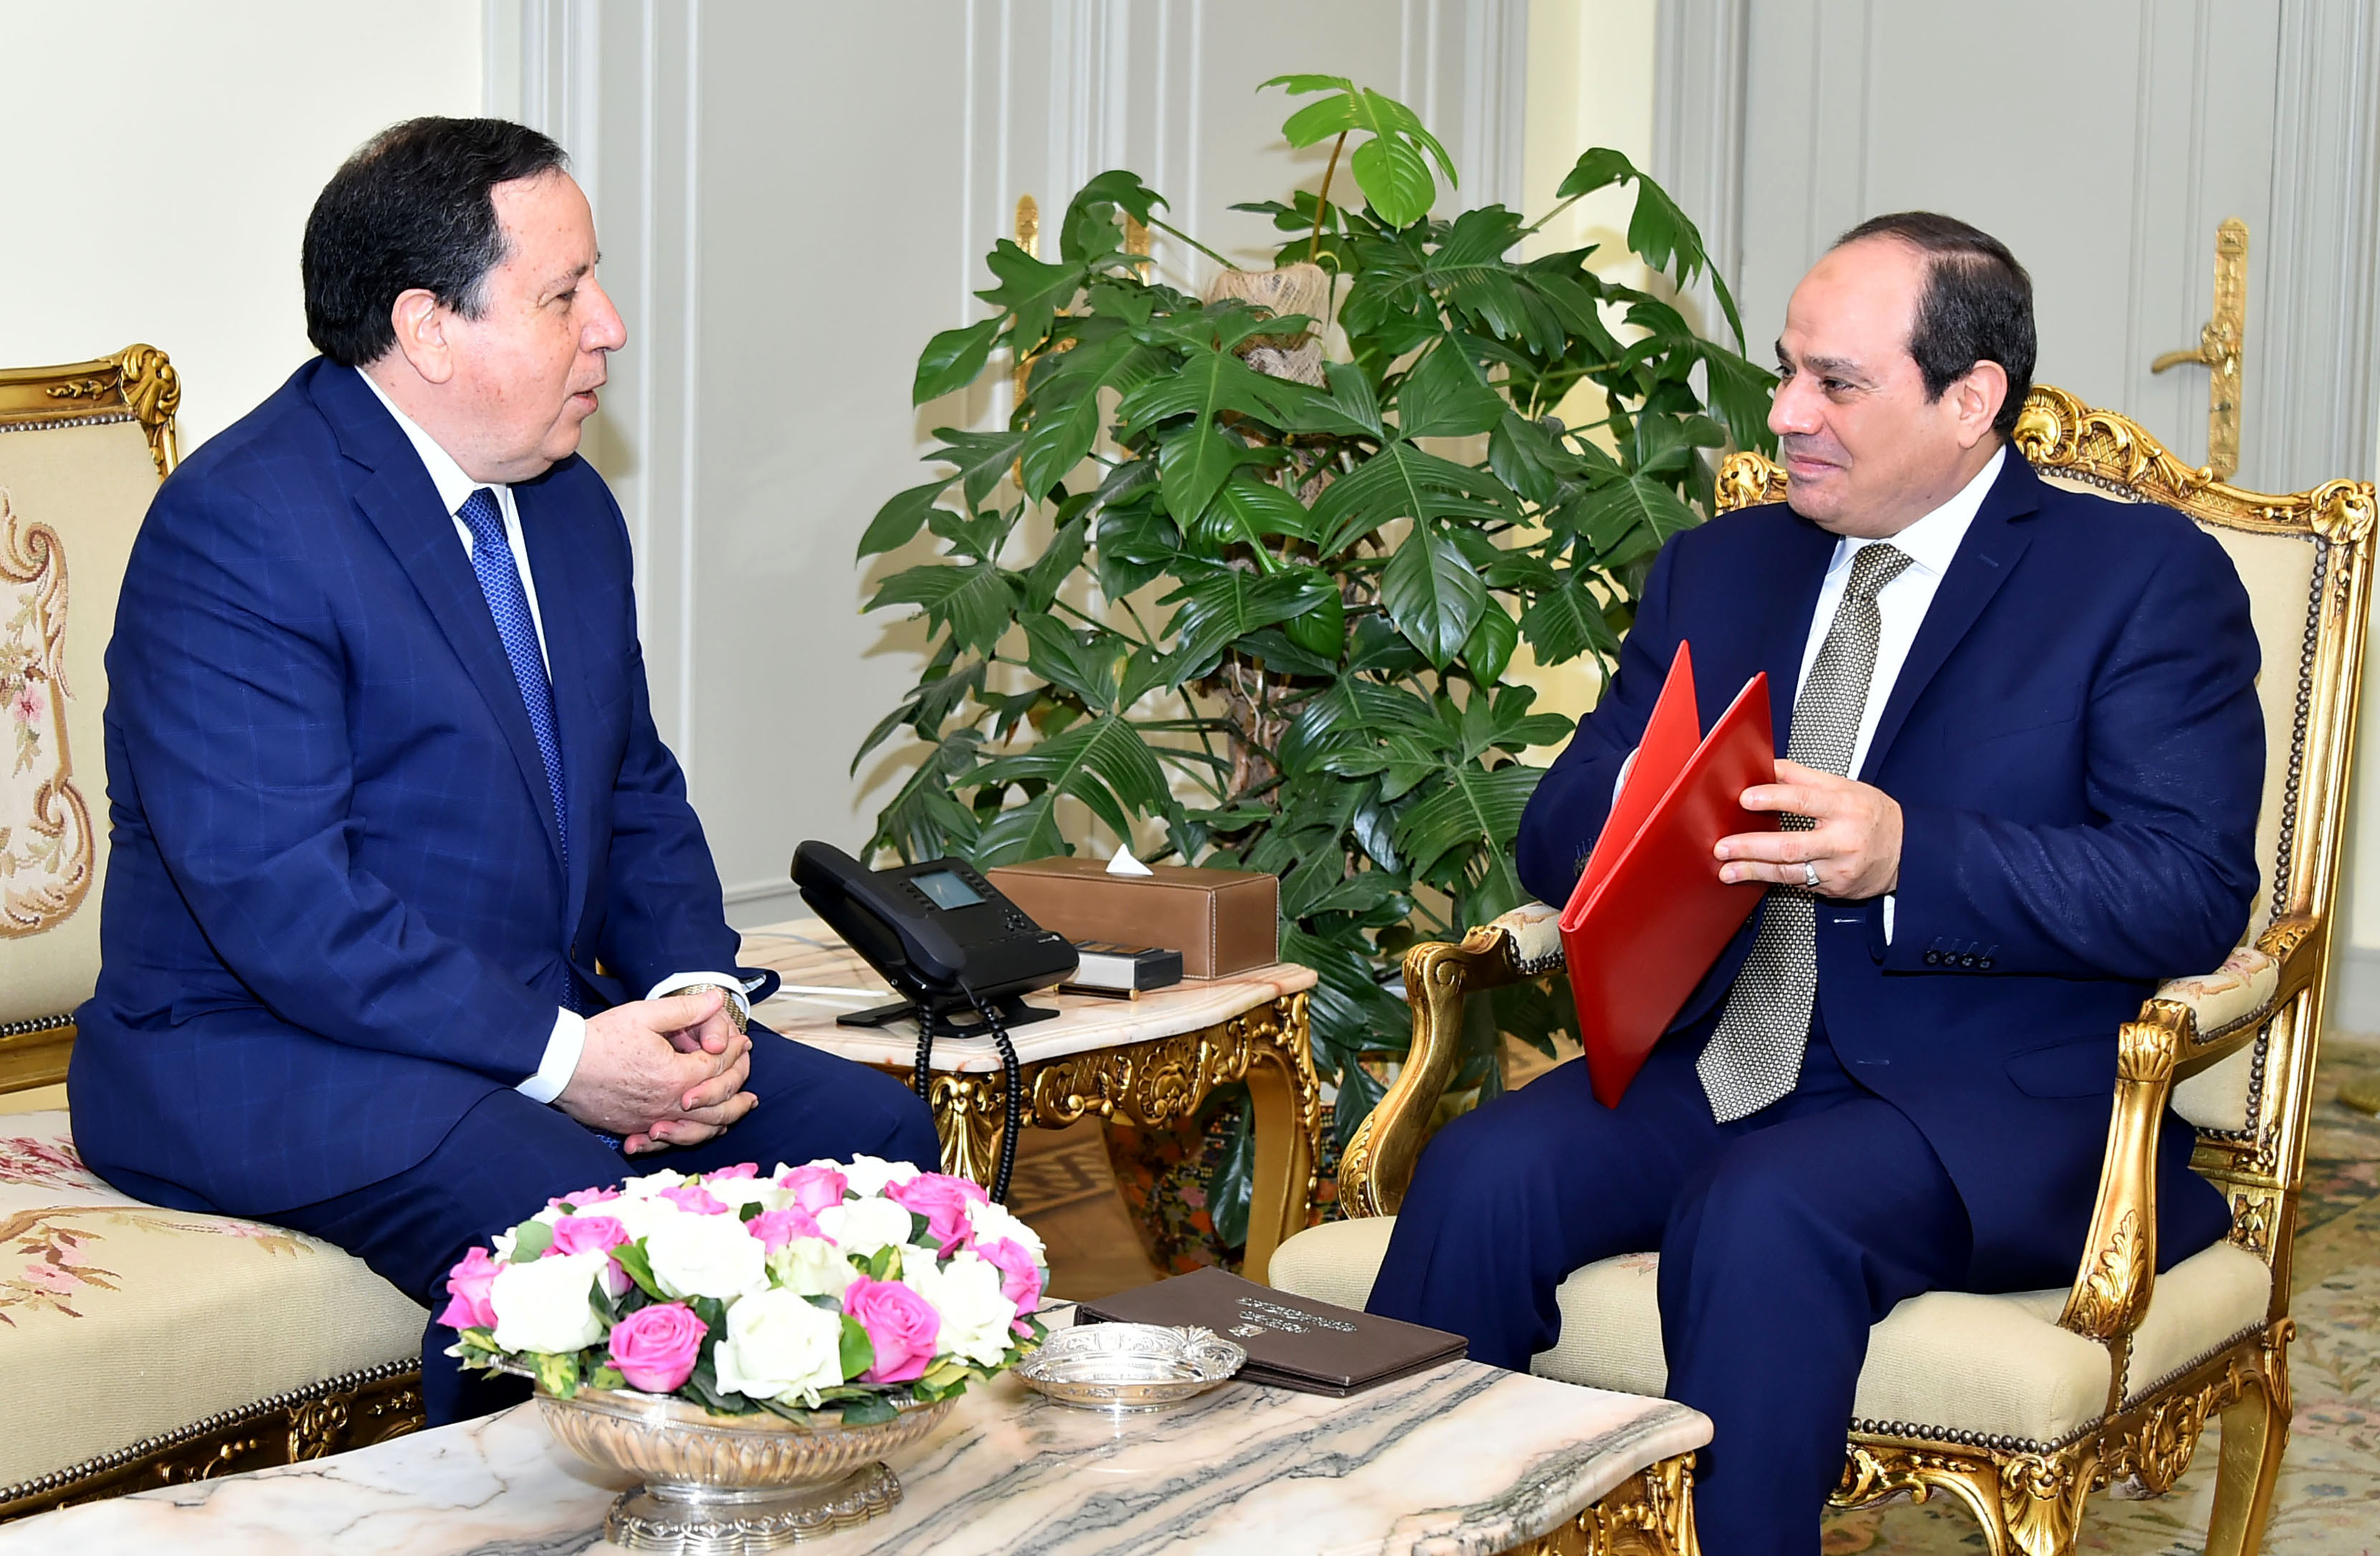 السيد الرئيس يستقبل وزير خارجية تونس